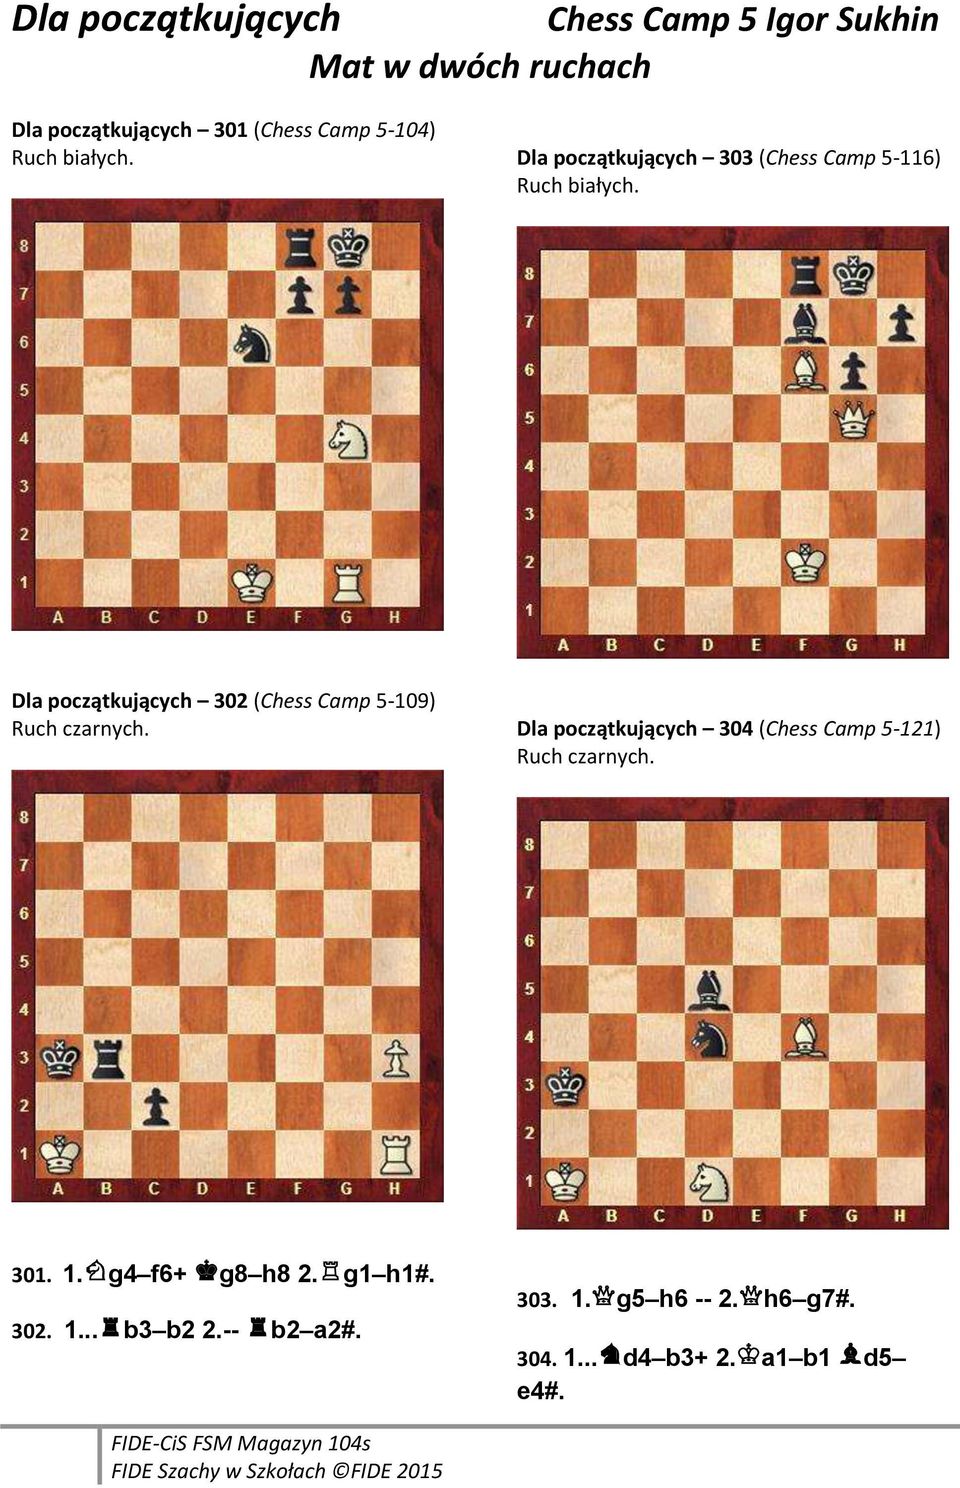 Dla początkujących 302 (Chess Camp 5-109) Ruch czarnych.